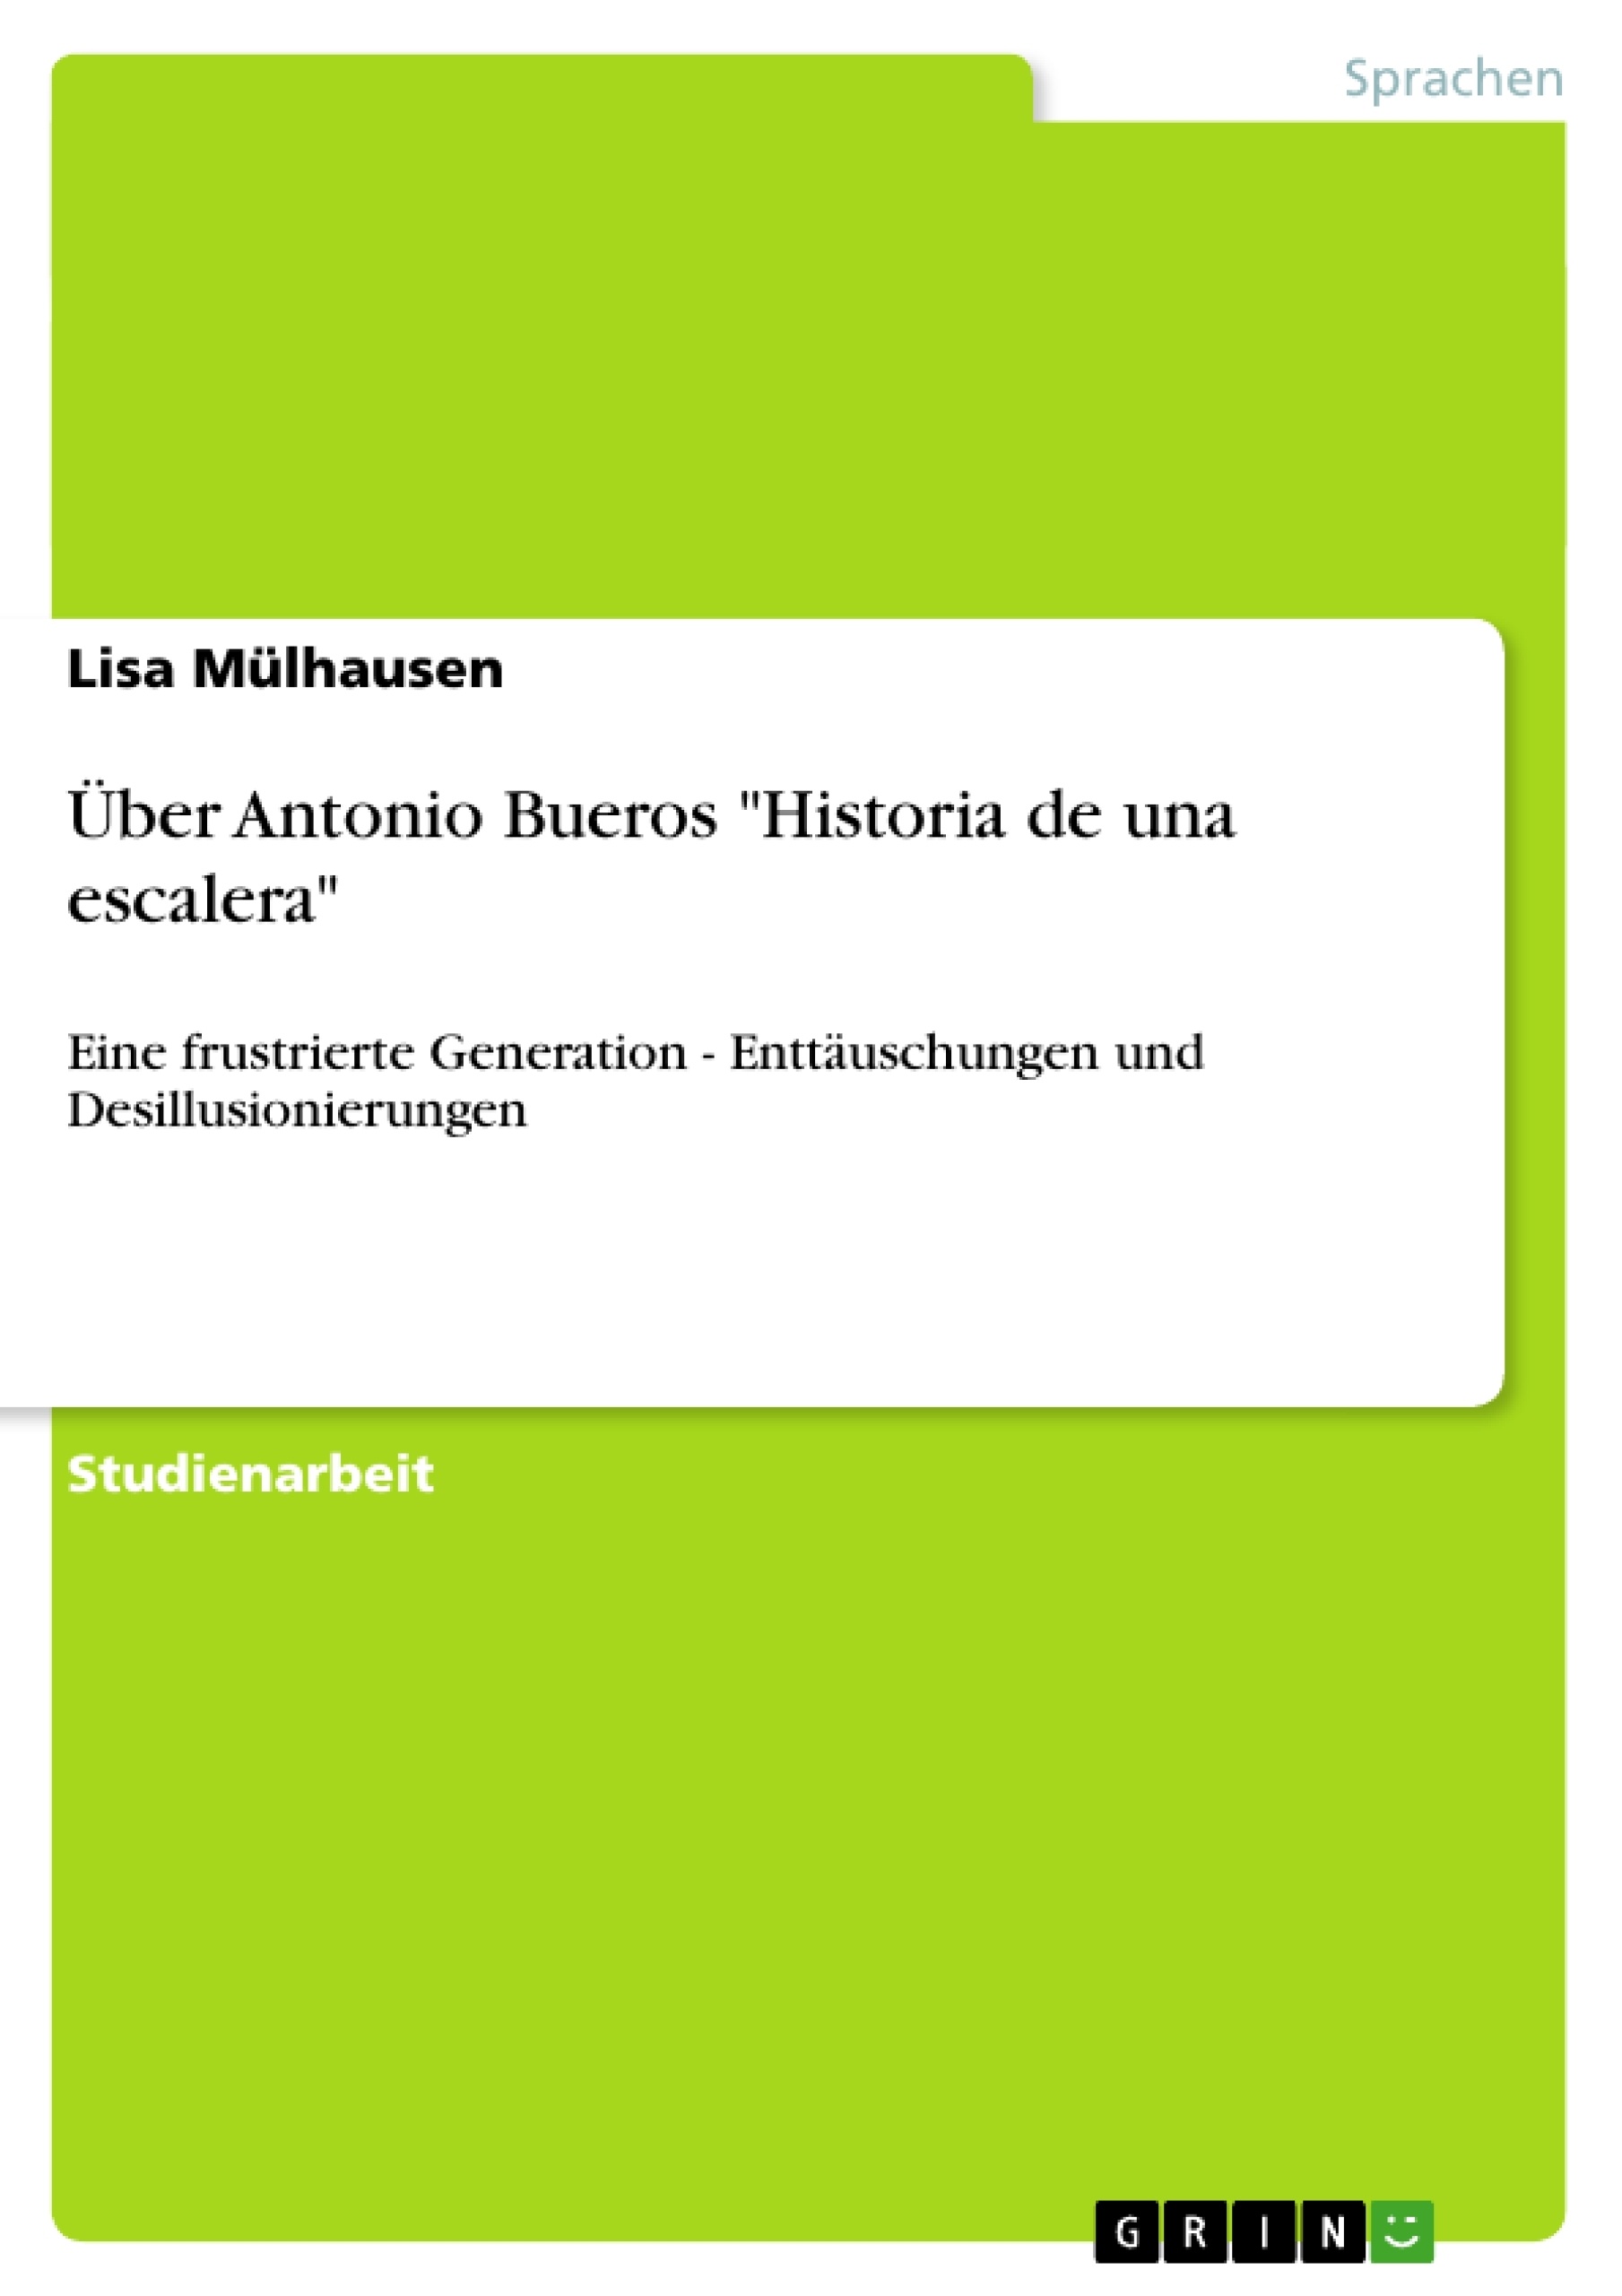 Title: Über Antonio Bueros "Historia de una escalera"